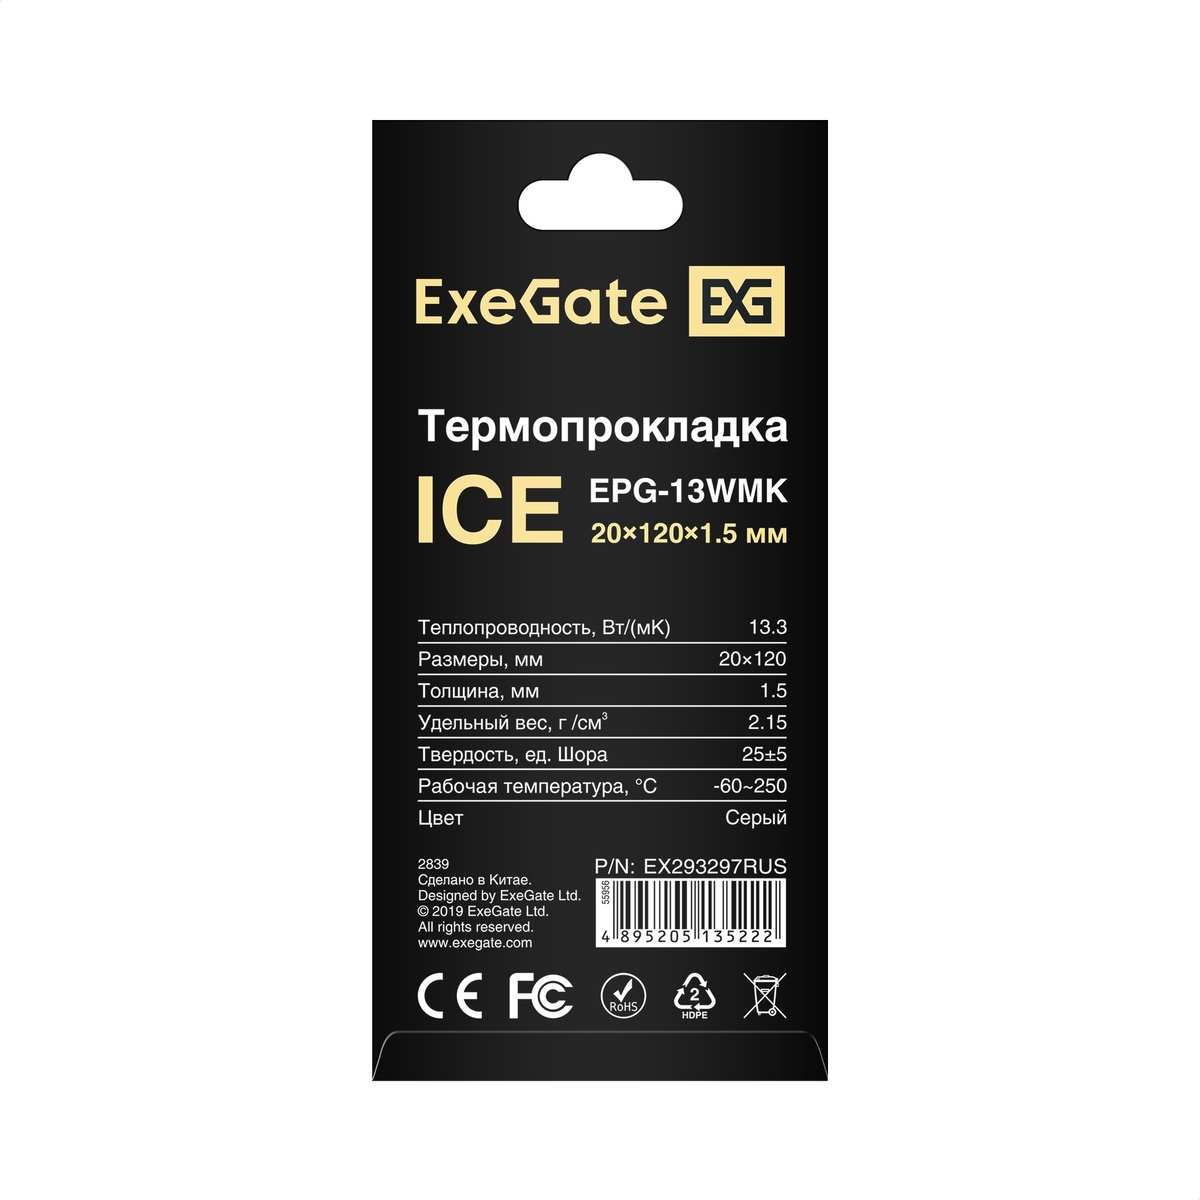  ExeGate Ice EPG-13WMK 20x120x1.5